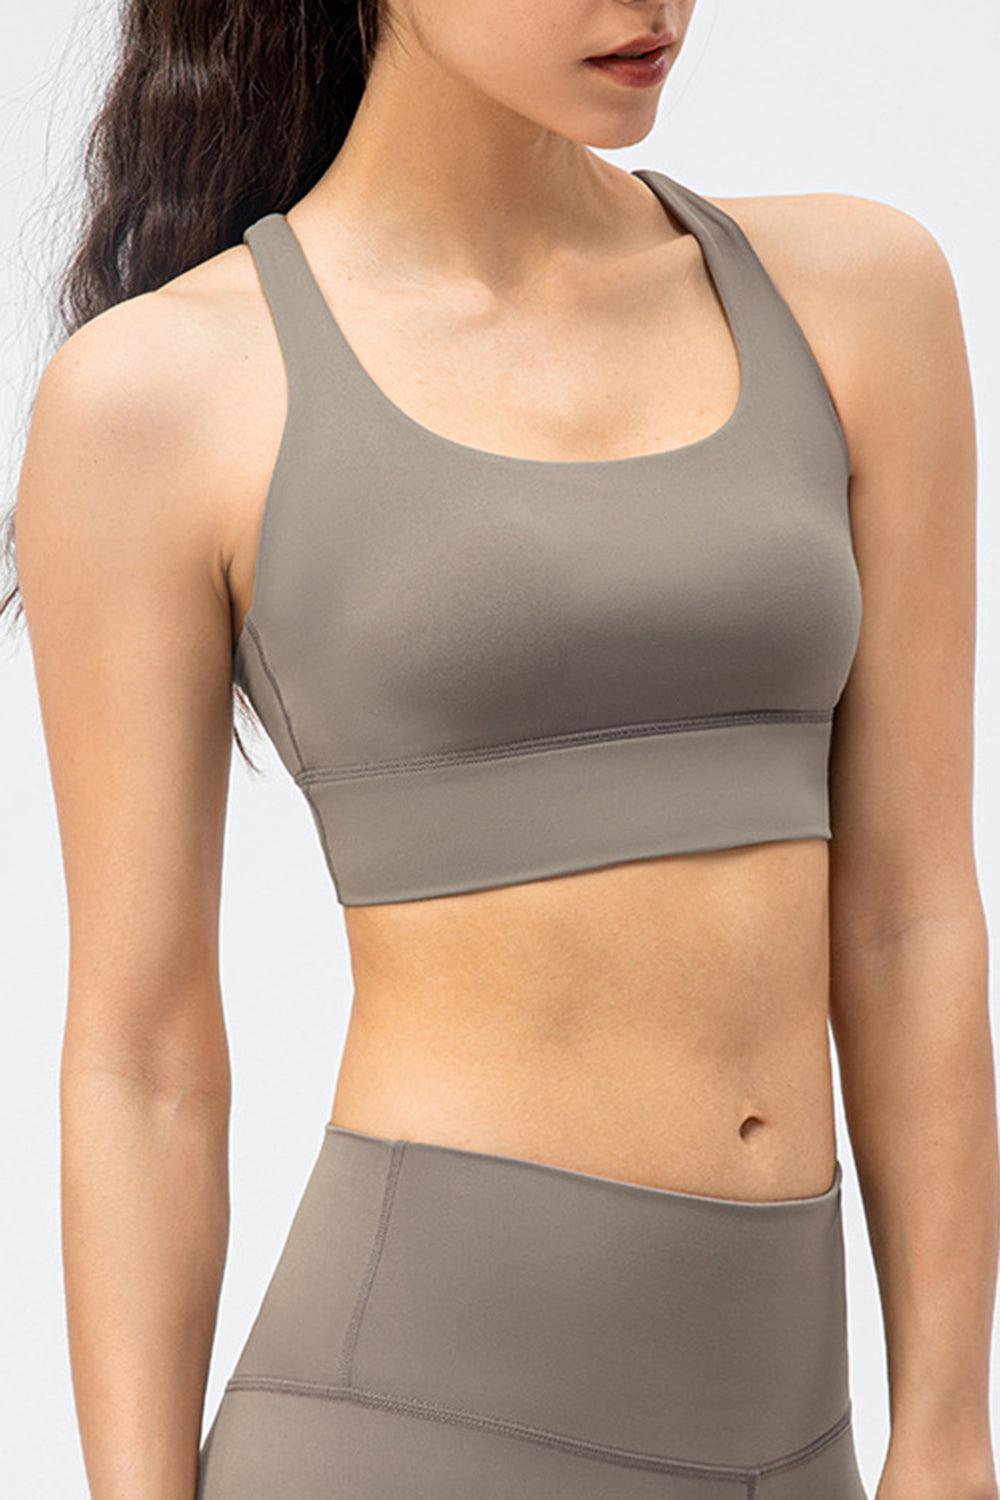 a woman wearing a gray sports bra top